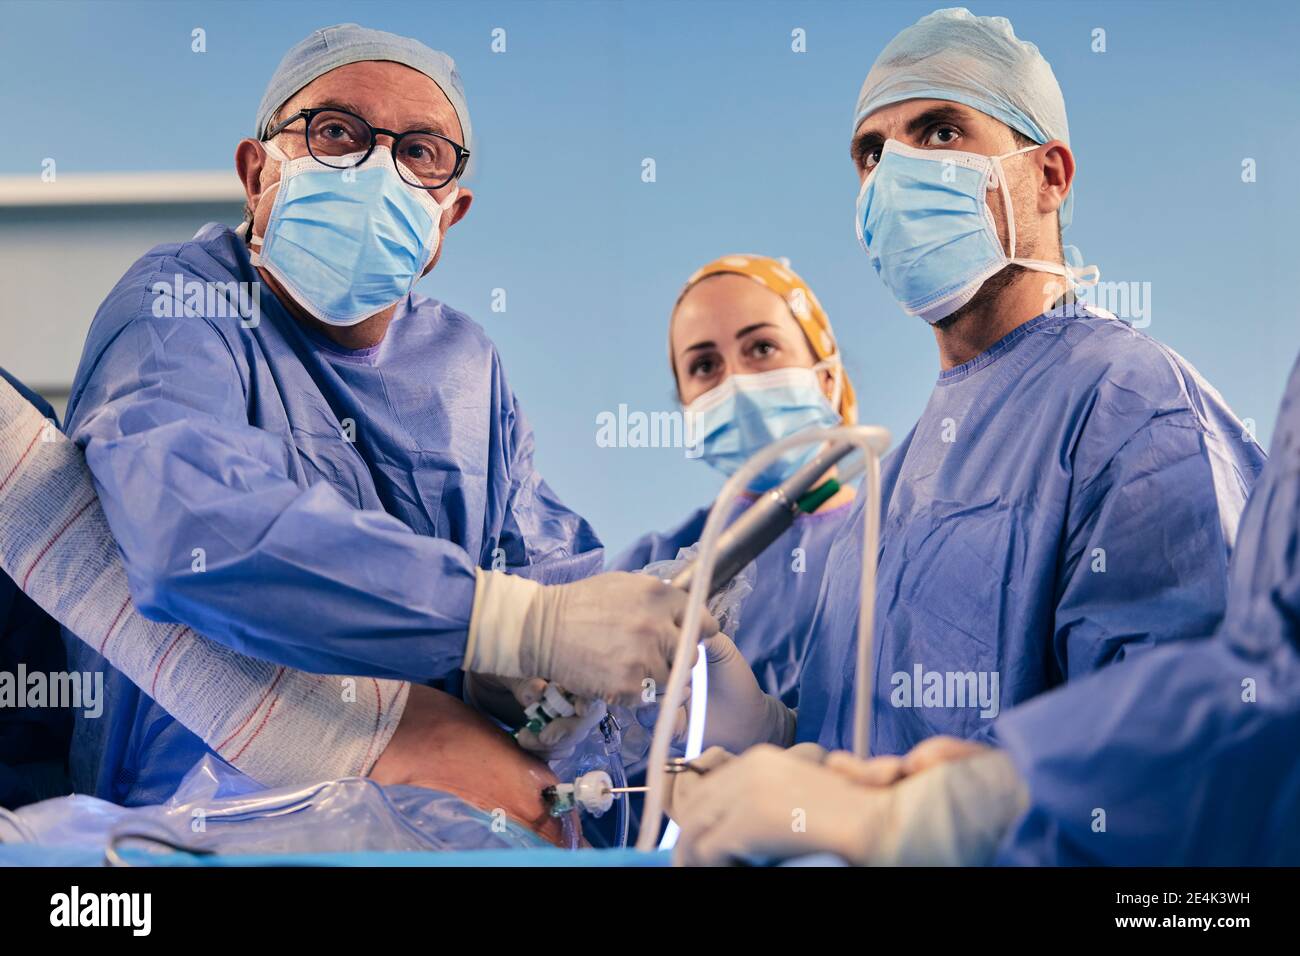 Chirurghi che indossano maschera protettiva faccia operando chirurgia artroscopica della spalla mentre In piedi nella sala operatoria durante il COVID-19 Foto Stock